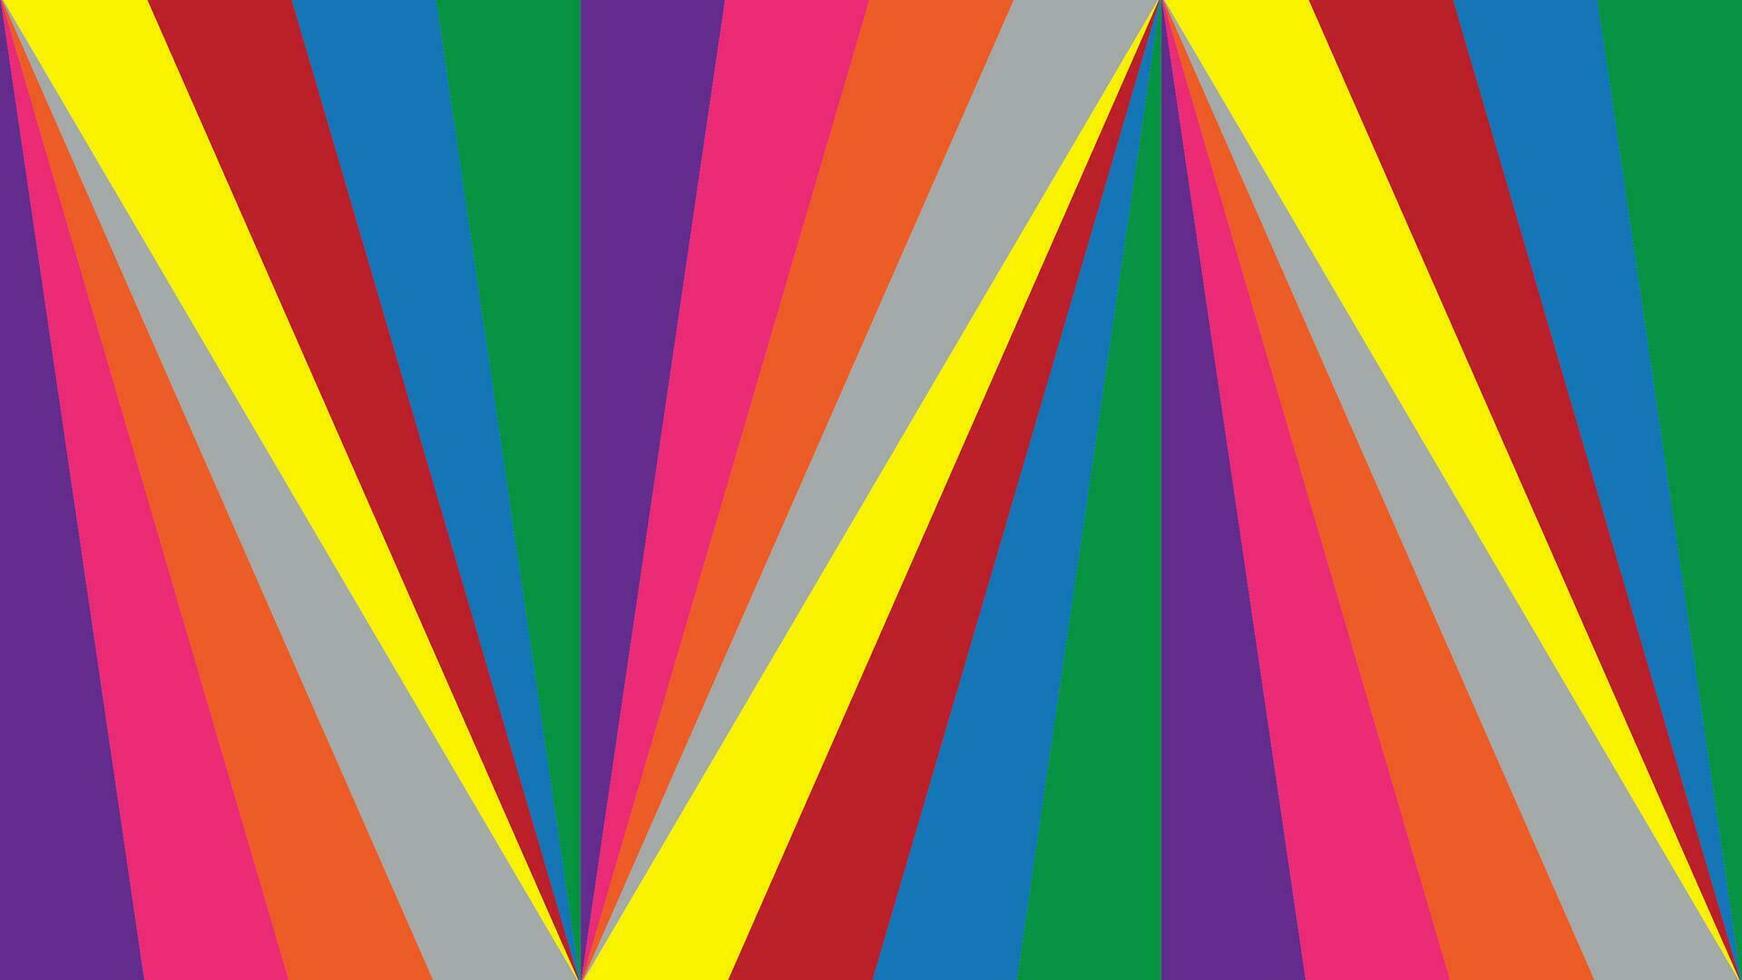 coloré modèle avec Triangle forme bleu, rouge, jaune, gris violet, orange, vert et rose couleur. vecteur illustration.